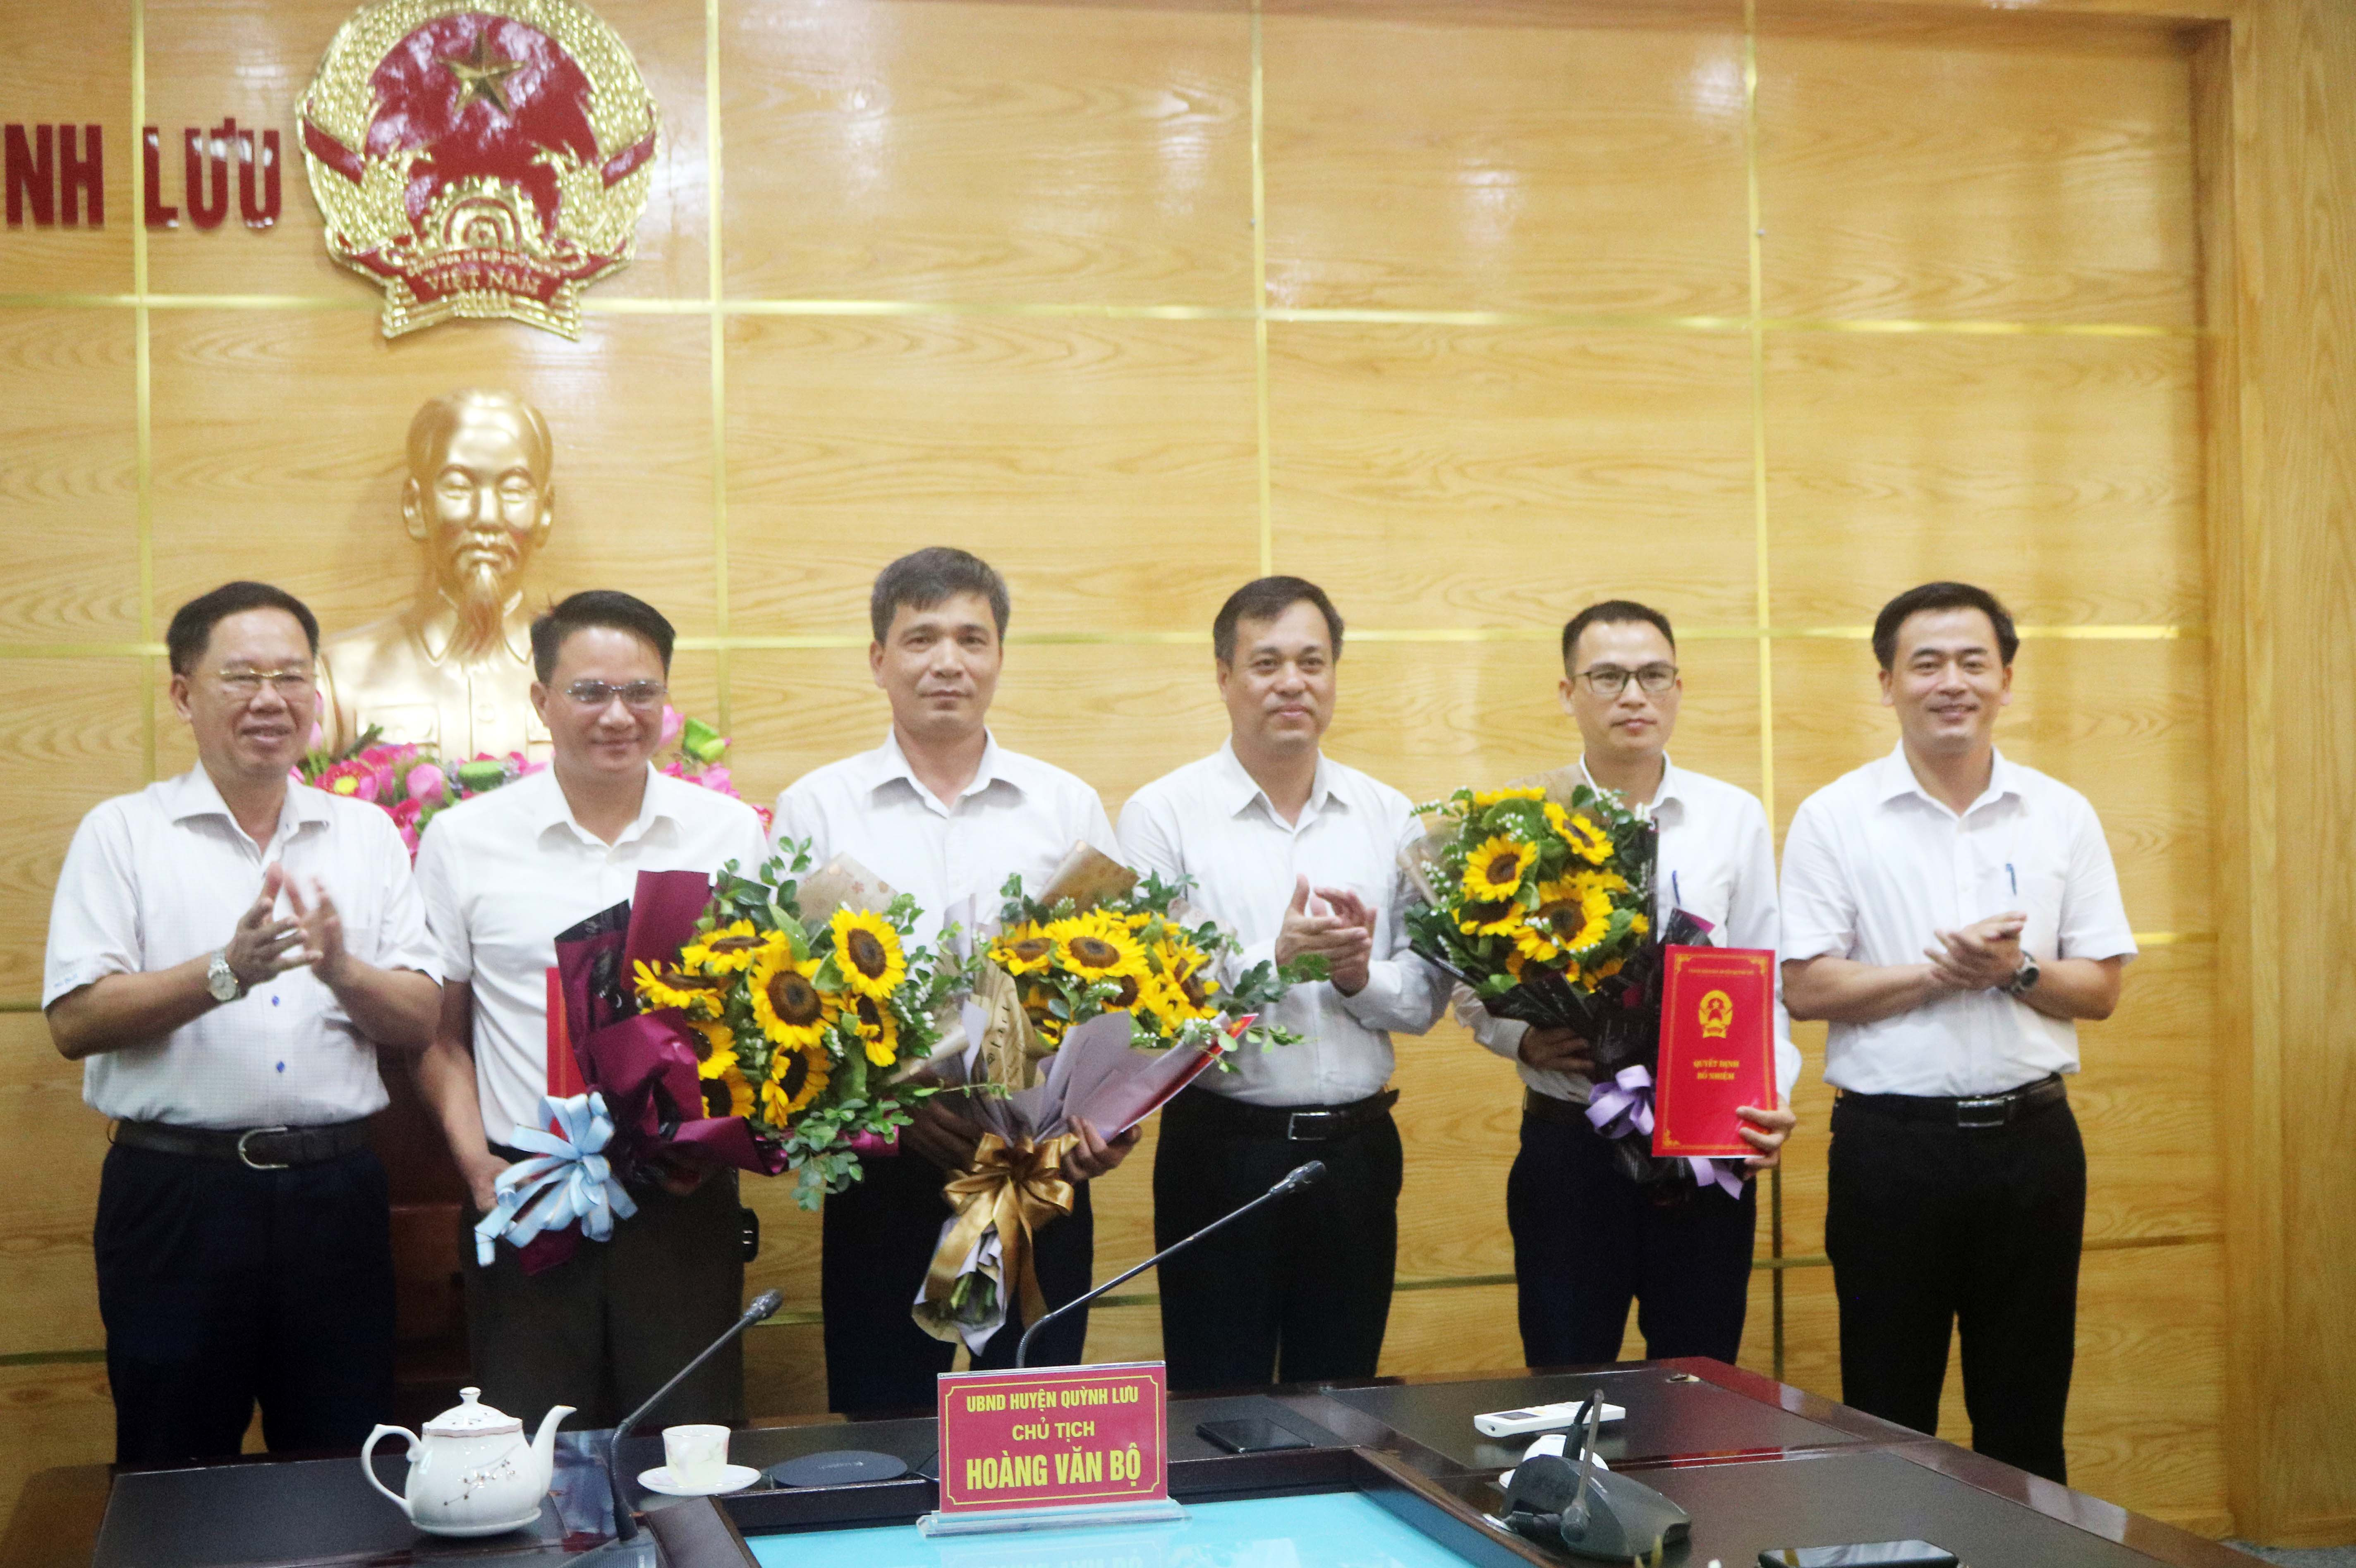 Lãnh đạo UBND huyện Quỳnh Lưu trao quyết định điều động và bổ nhiệm cán bộ đối với các đồng chí Hồ Anh Thắng, Trần Xuân Nhương và Phạm Thanh Hải